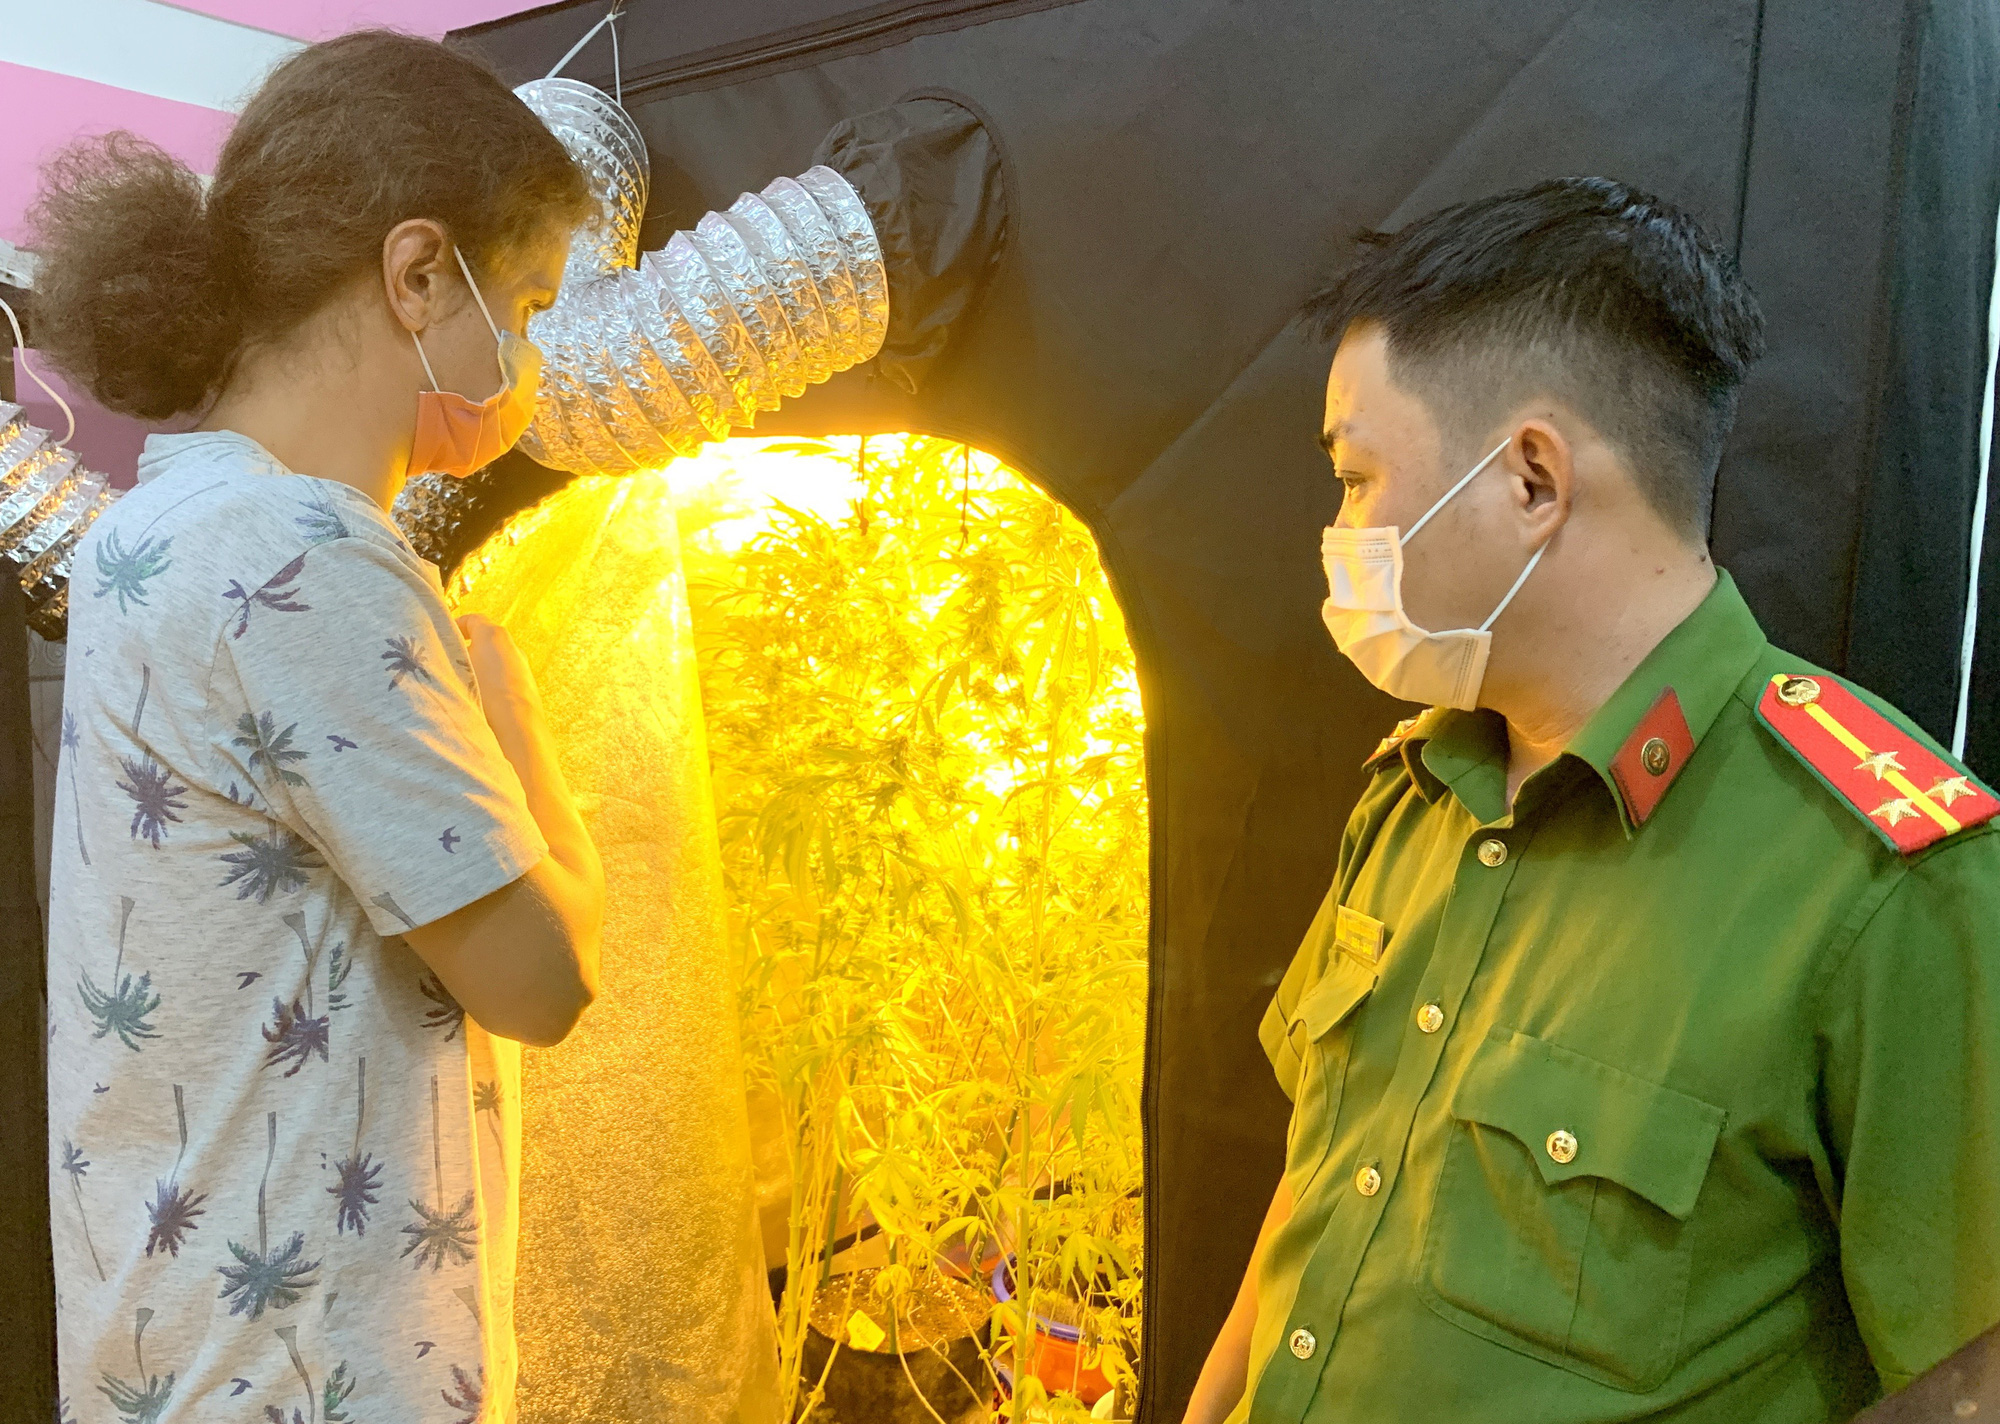 Bình Thuận: Bắt đối tượng người nước ngoài trồng và sản xuất cần sa tinh vi trong phòng ngủ có máy lạnh - Ảnh 1.